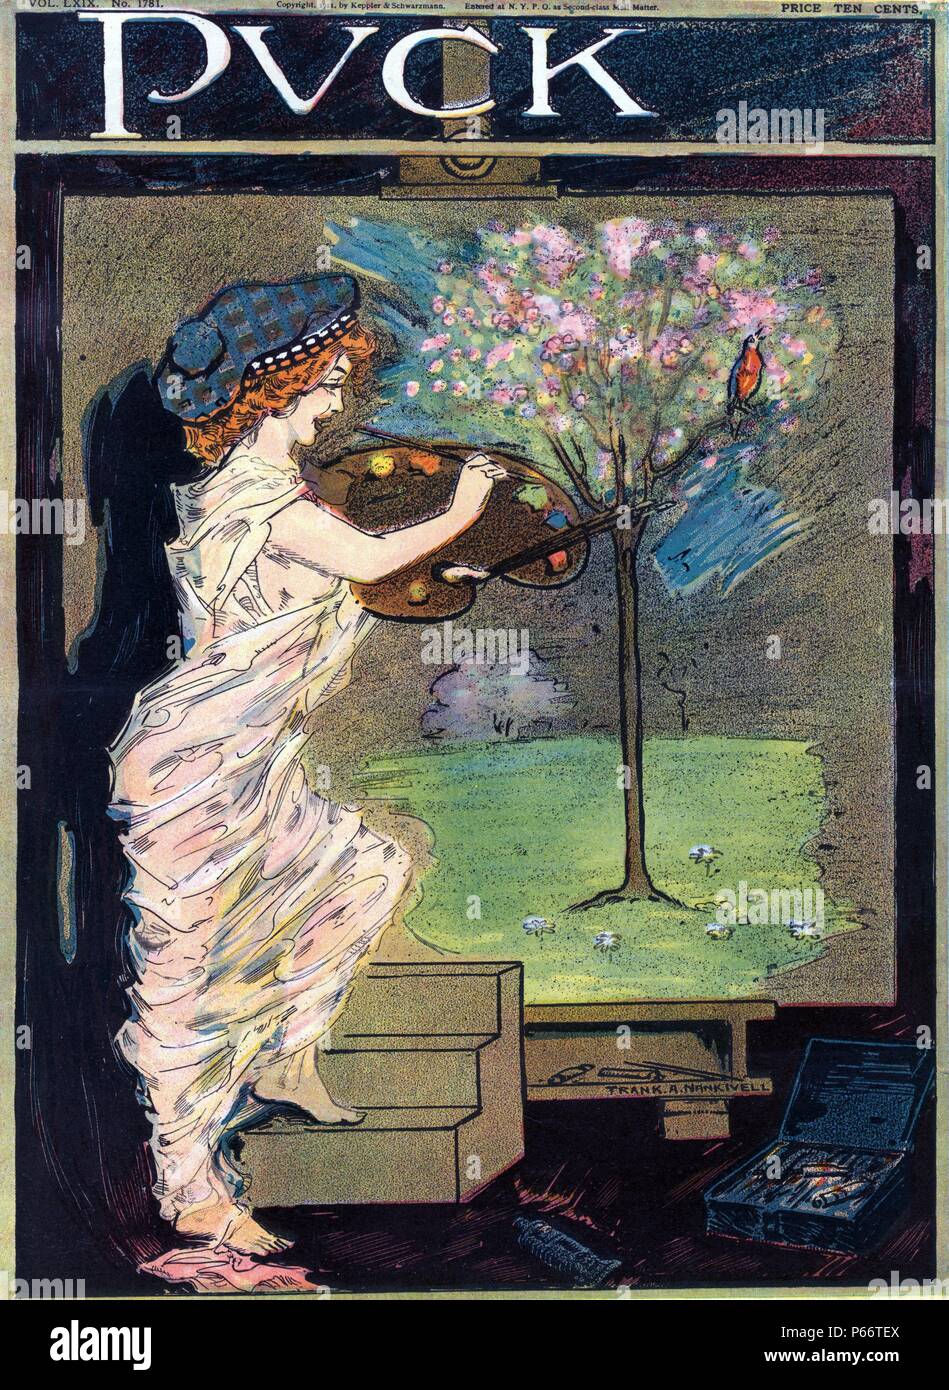 Miss Frühling, Künstler von Frank A. Nankivell, 1869-1959, Künstler 1911. Abbildung zeigt Frühling als Künstlerin in einem durchscheinenden Material umwickelt, malen ein Baum mit Blüten und ein Vogel auf einer großen Leinwand. Stockfoto